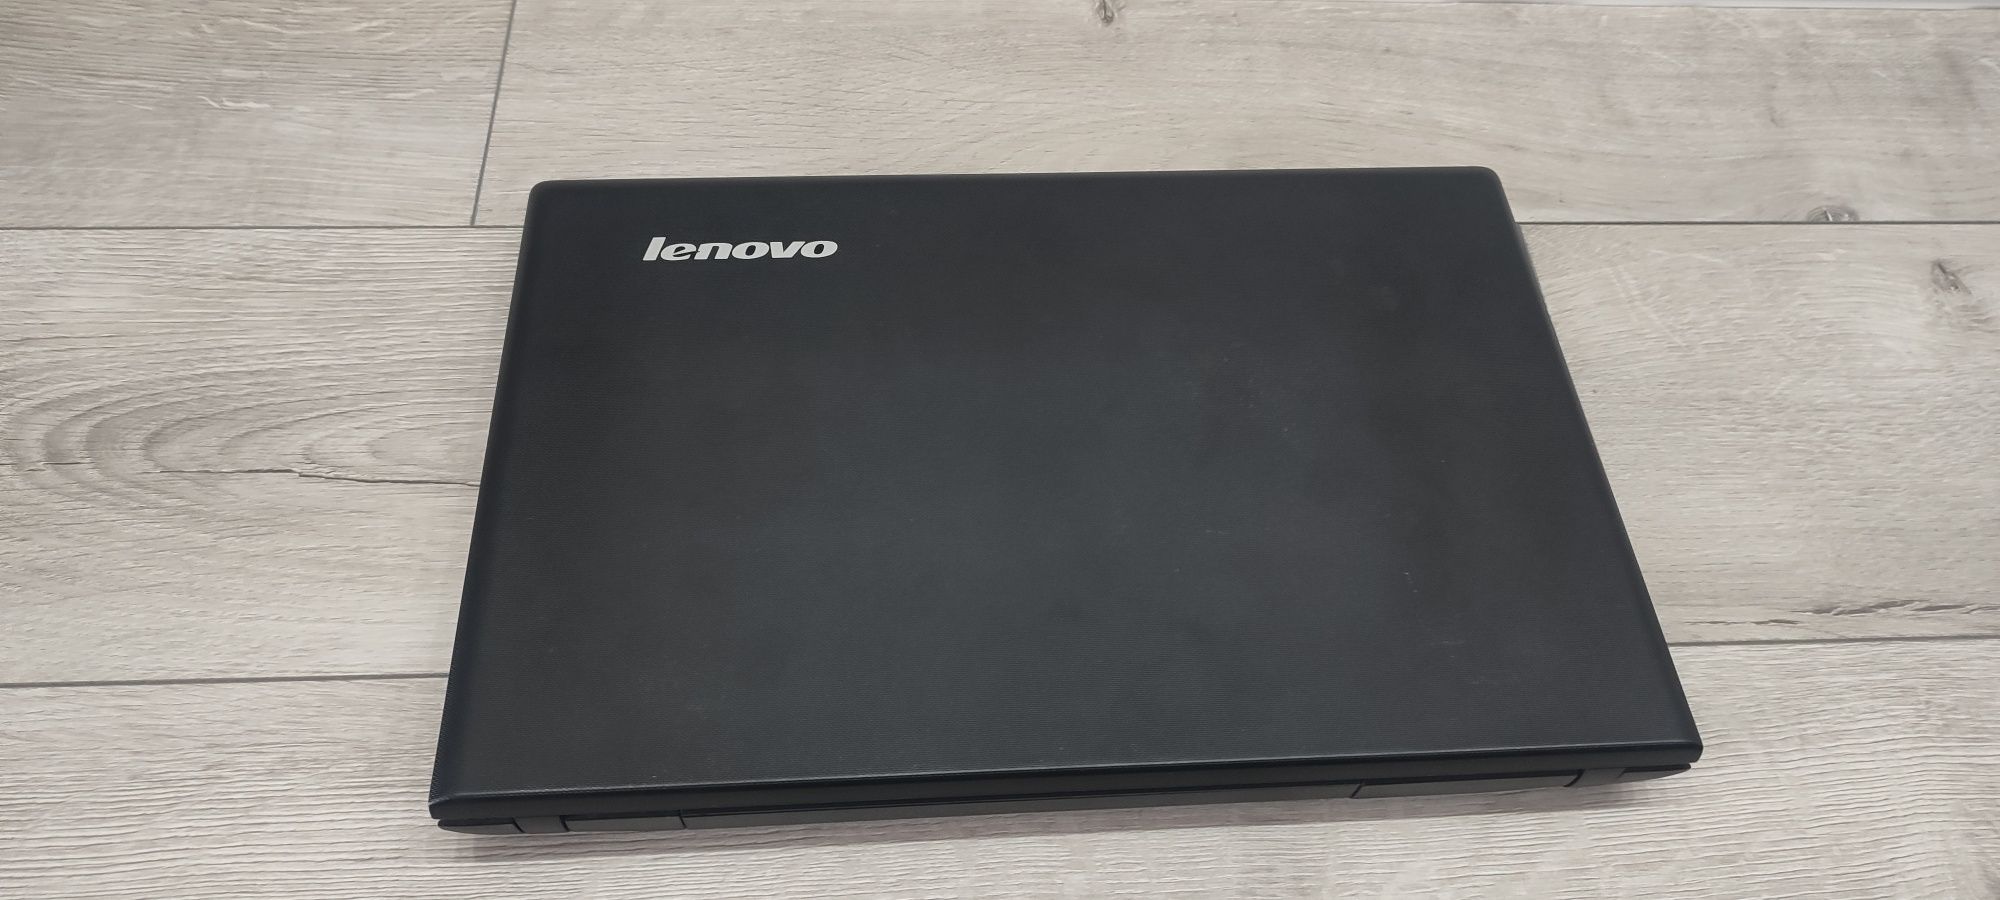 Lenovo ThinkPad x131e